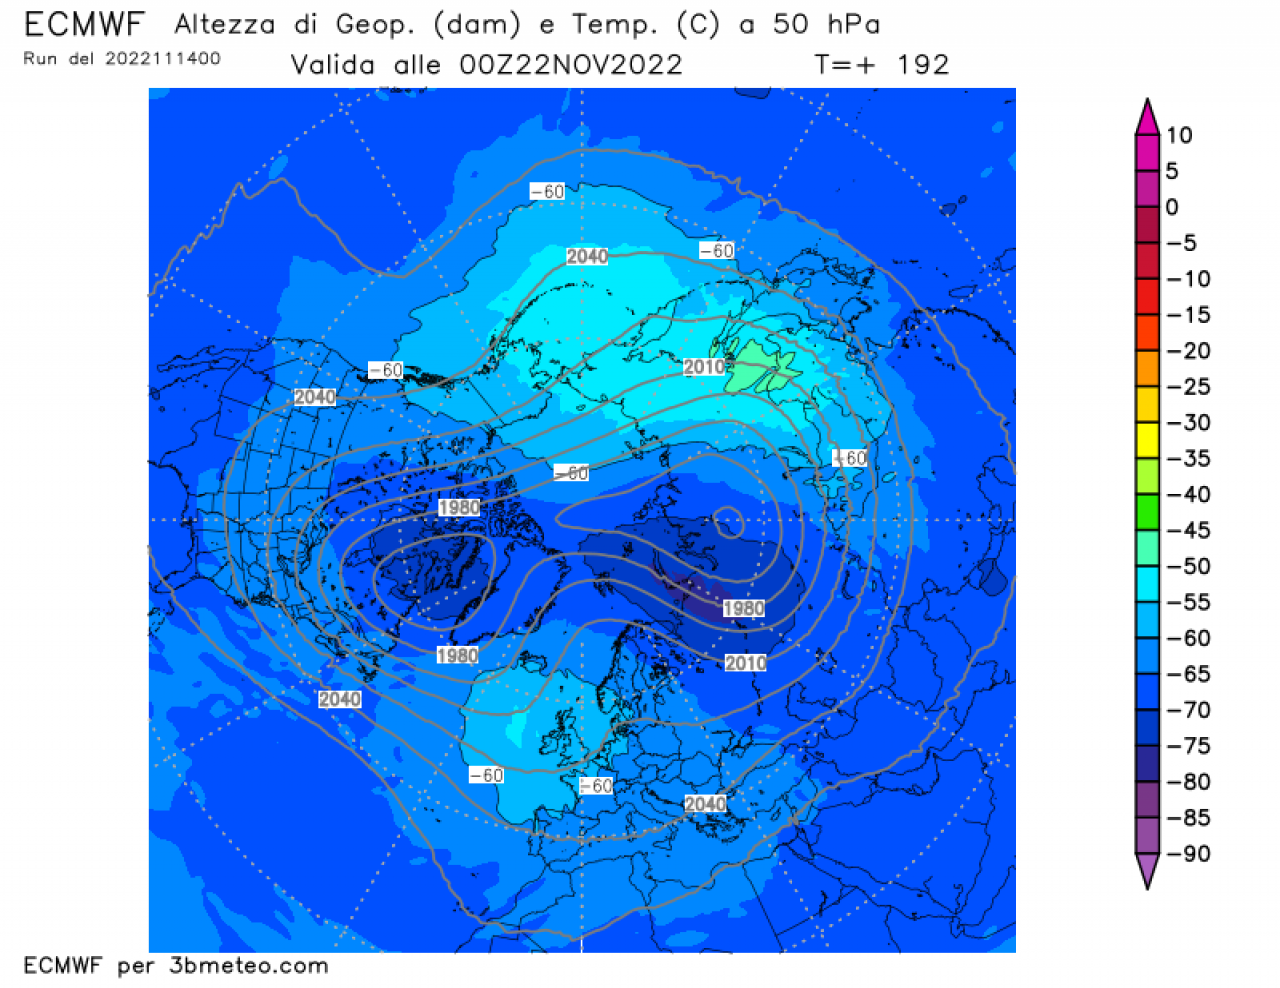 vortice polare stratosferico, situazione a 50 hPa